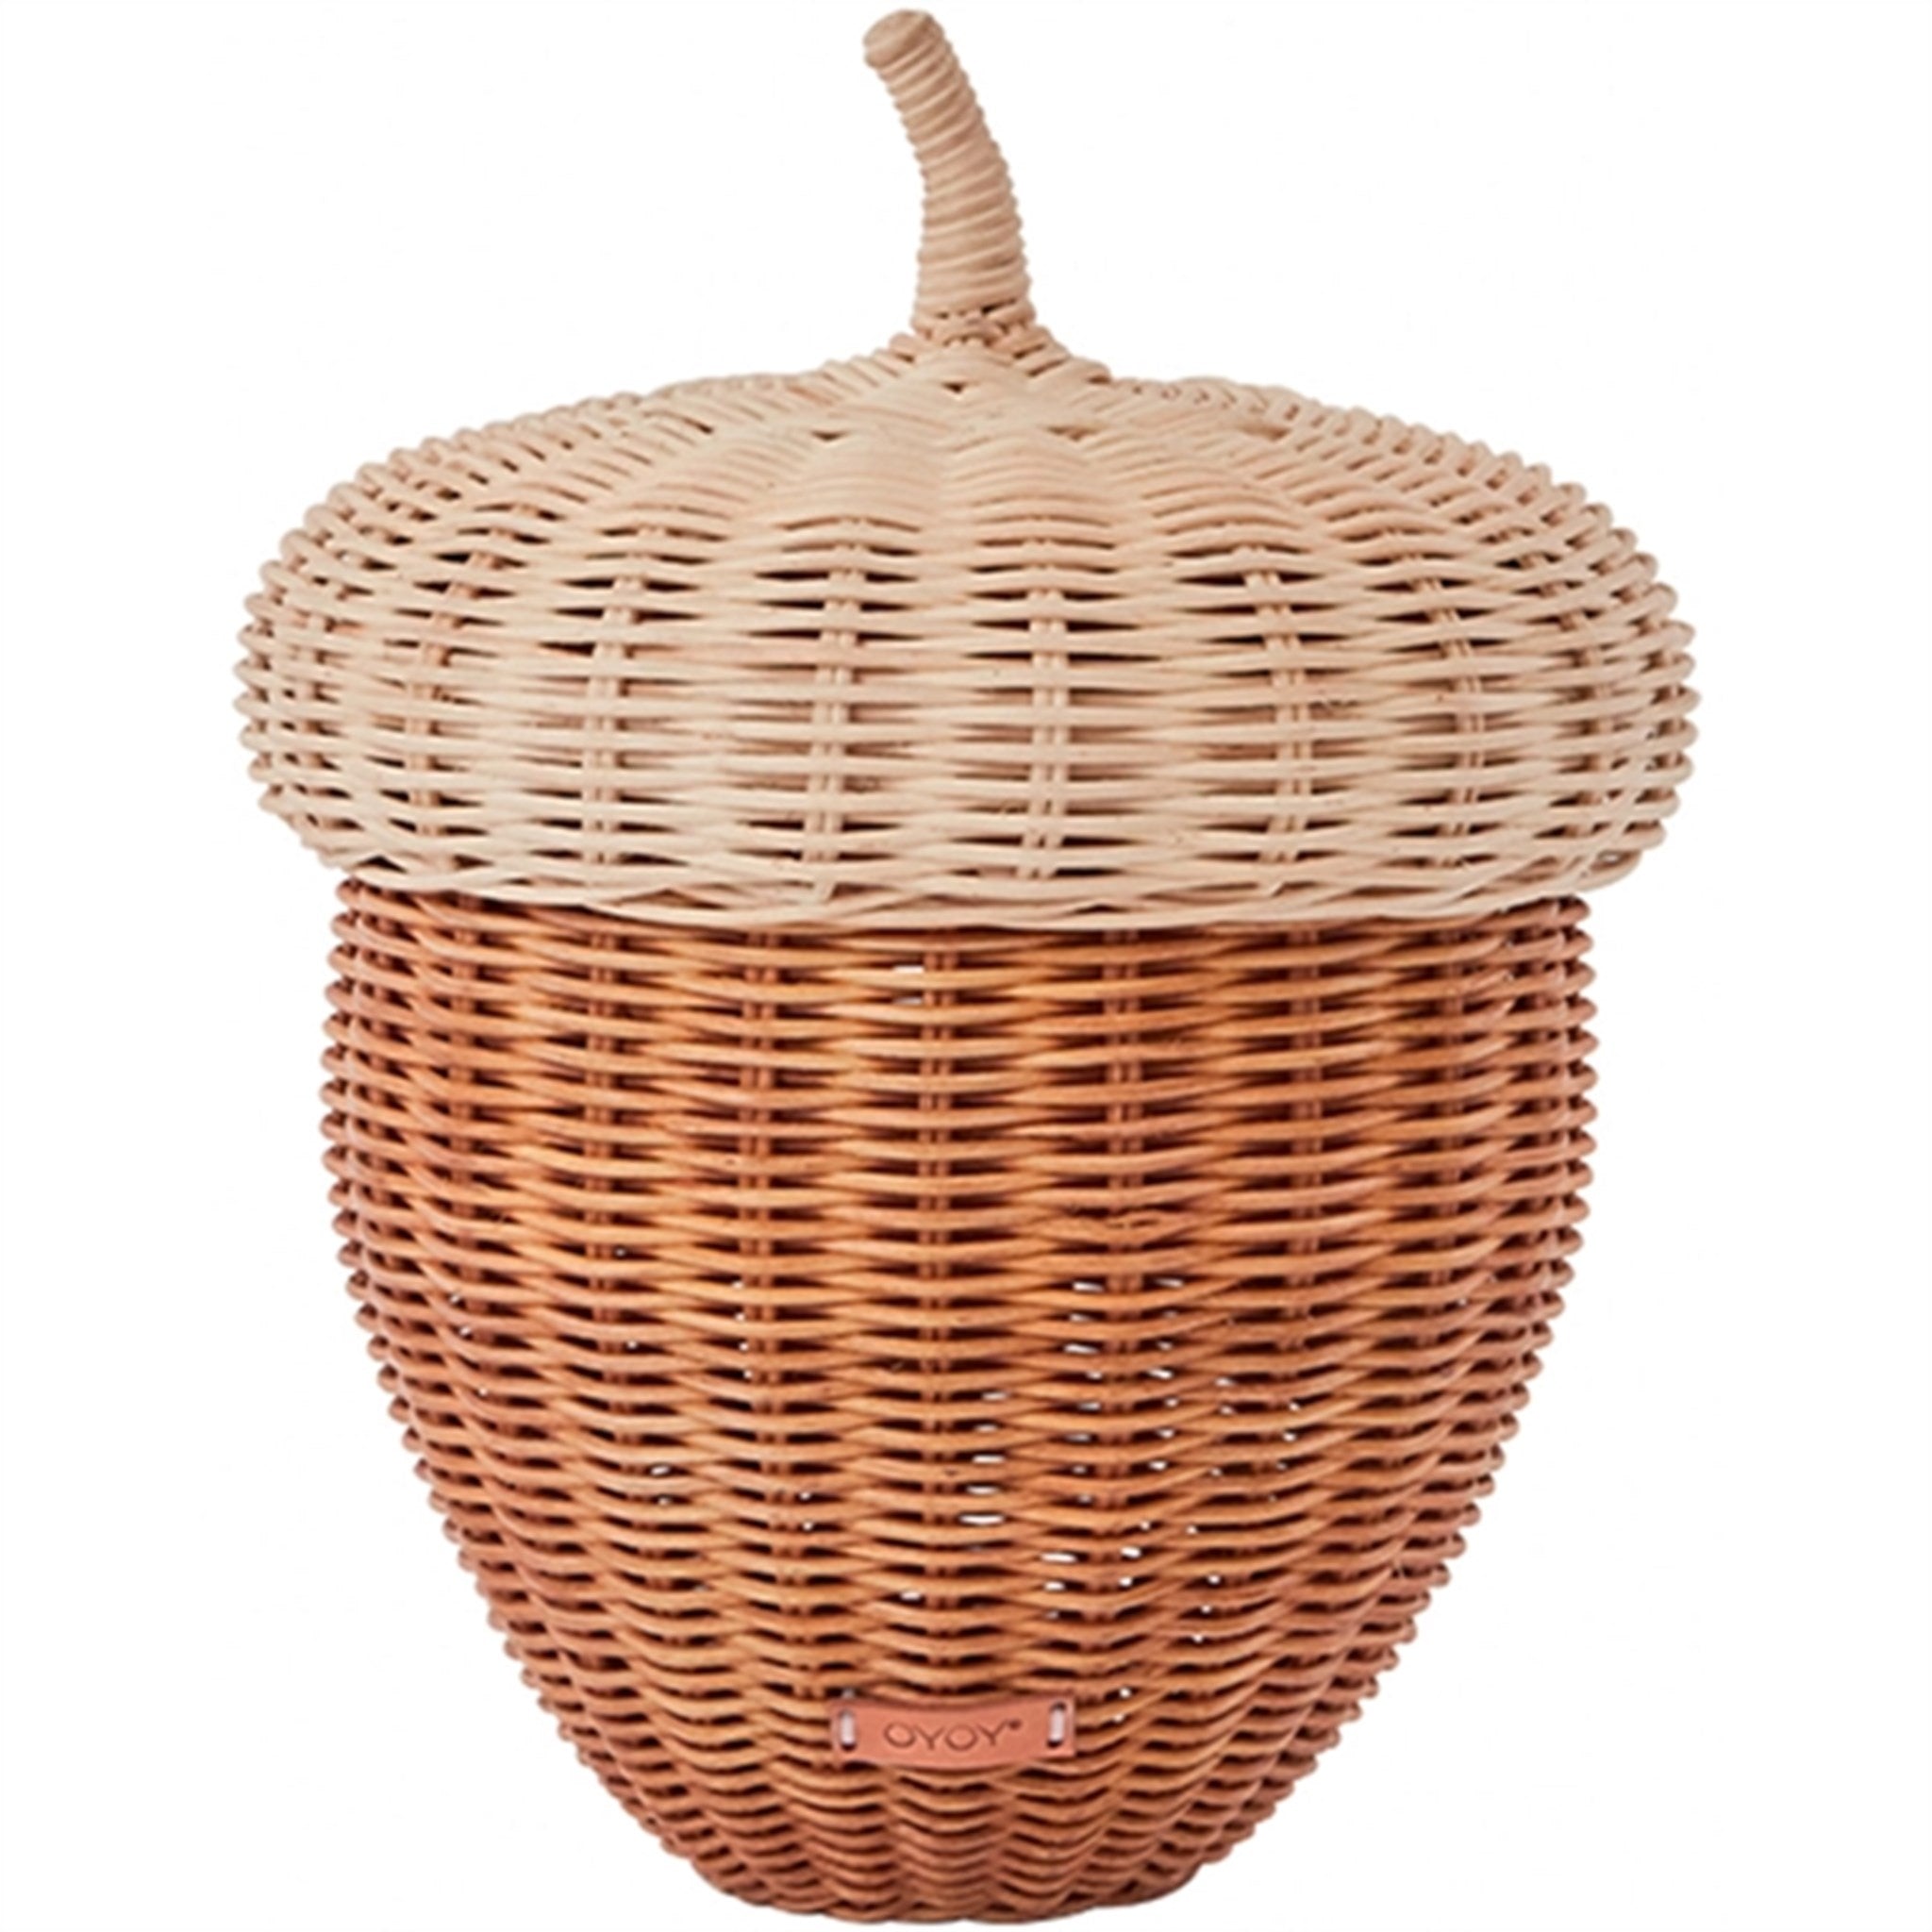 OYOY Basket Acorn